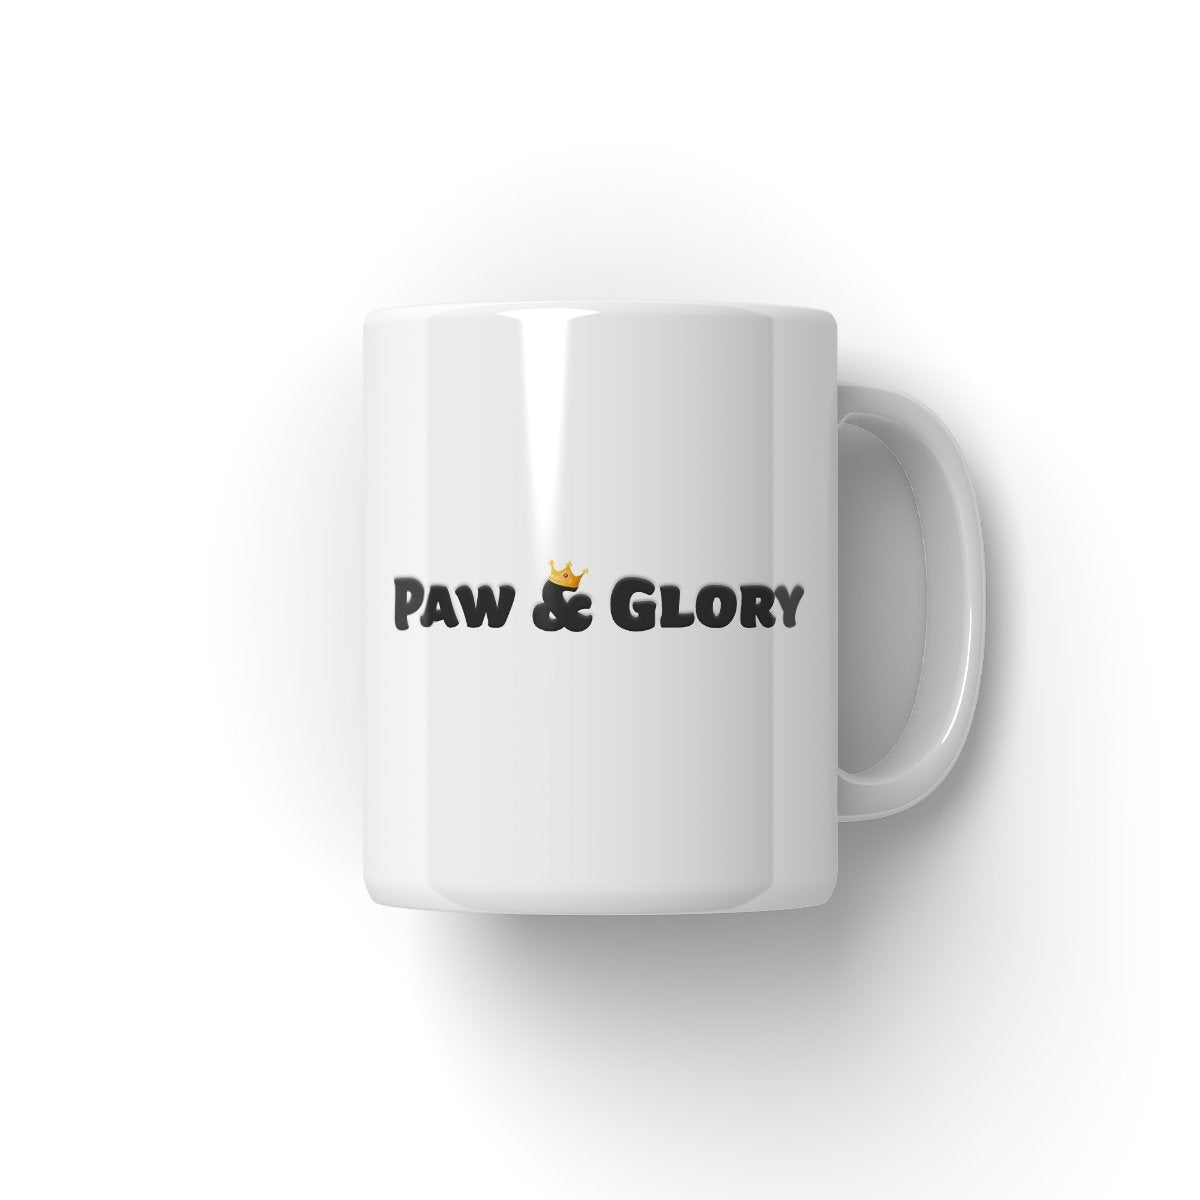 mug dog personalised dog mug uk portrait of your dog, turn pet photos to art dog in uniform, paw and glory, pawandglory